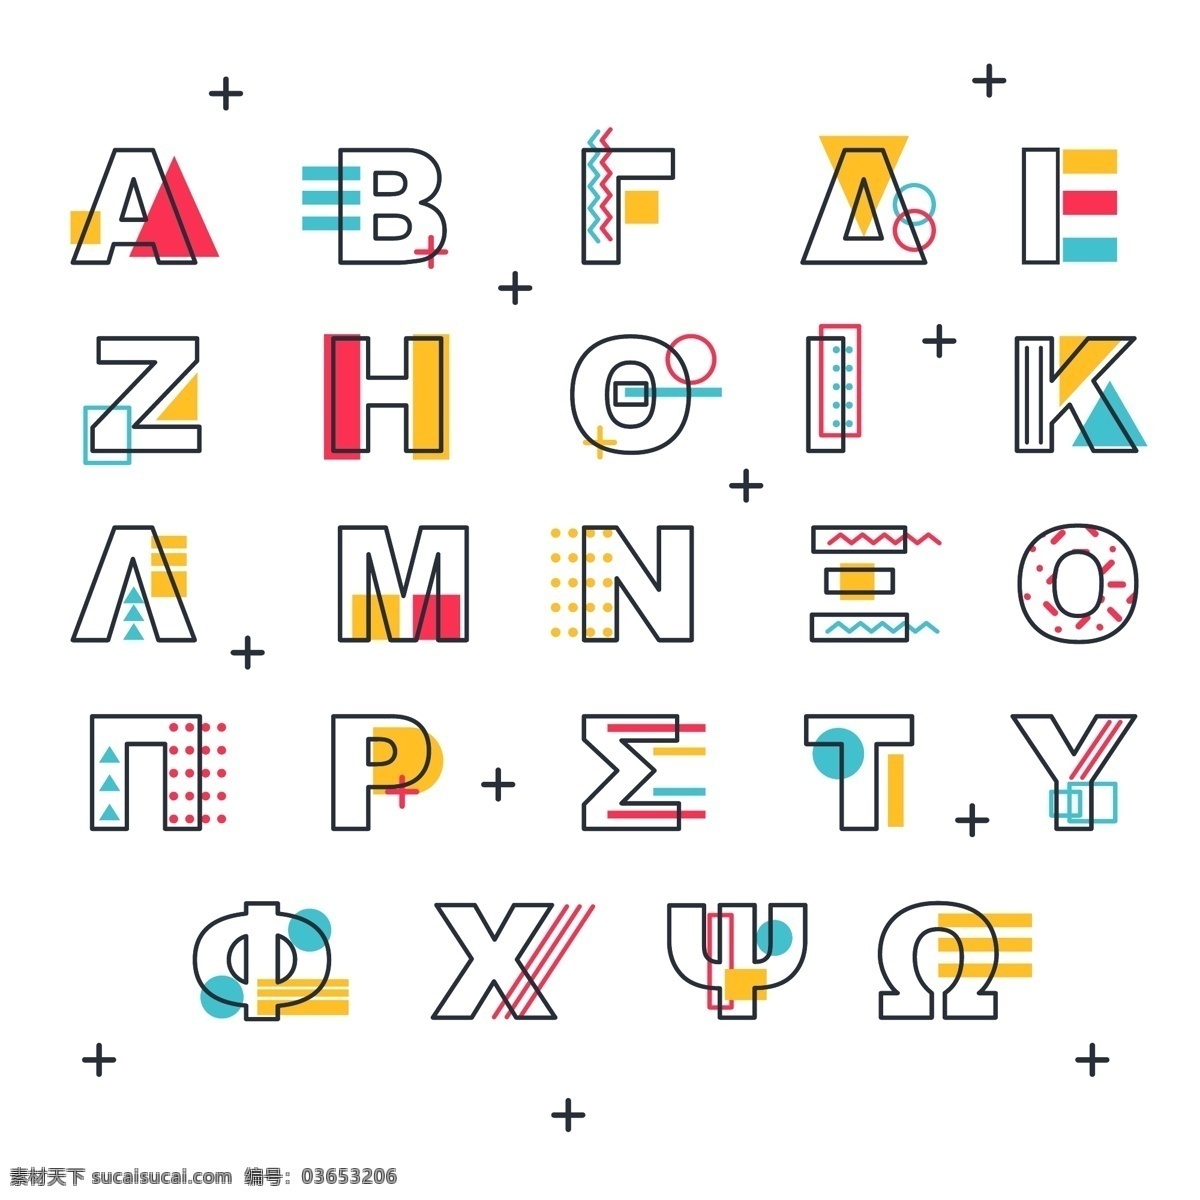 英文字母设计 创意字体 字母 字体 矢量 英文字体 符号 图标 标签 logo 卡通设计